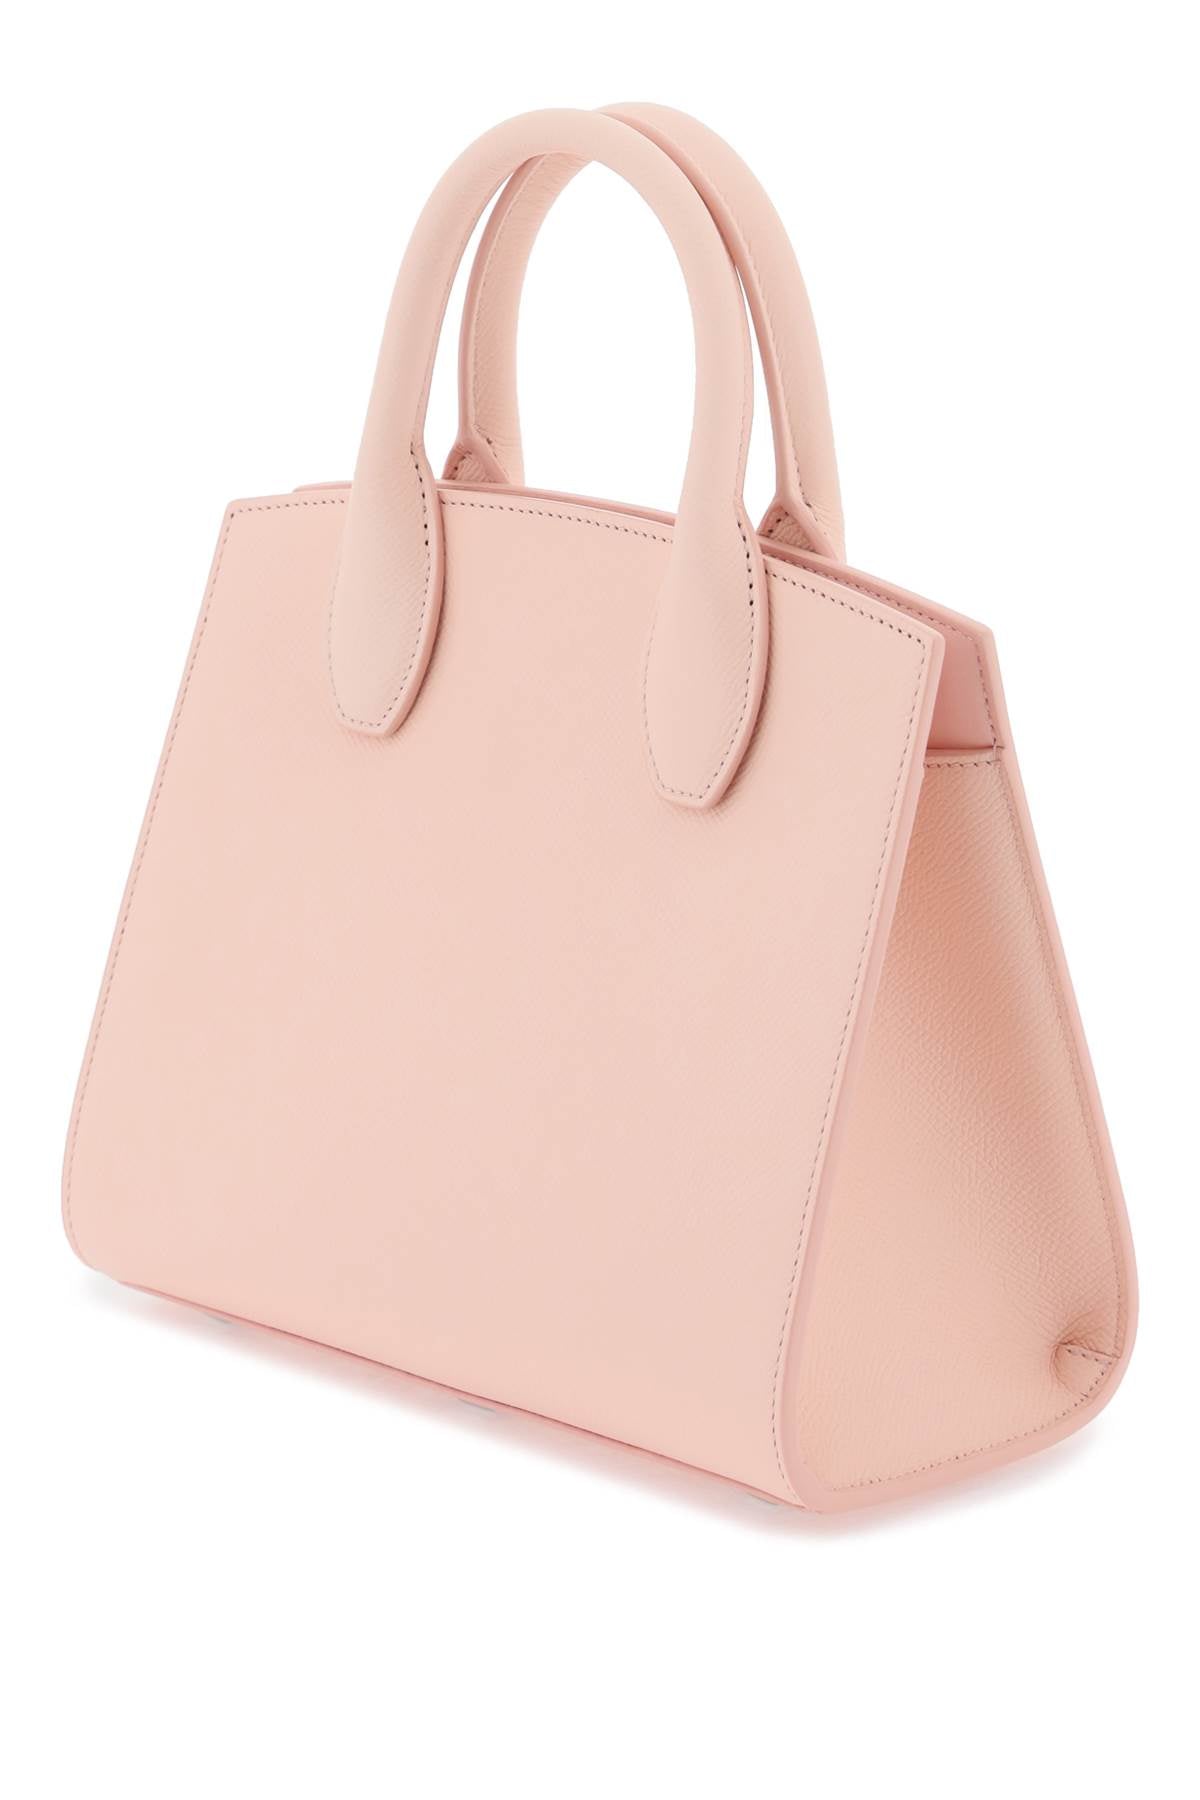 Hộp Đựng Đồ Thời Trang Pink Studio Handbags với Chất Liệu Da Cá Sấu và Mã Khóa Gancini